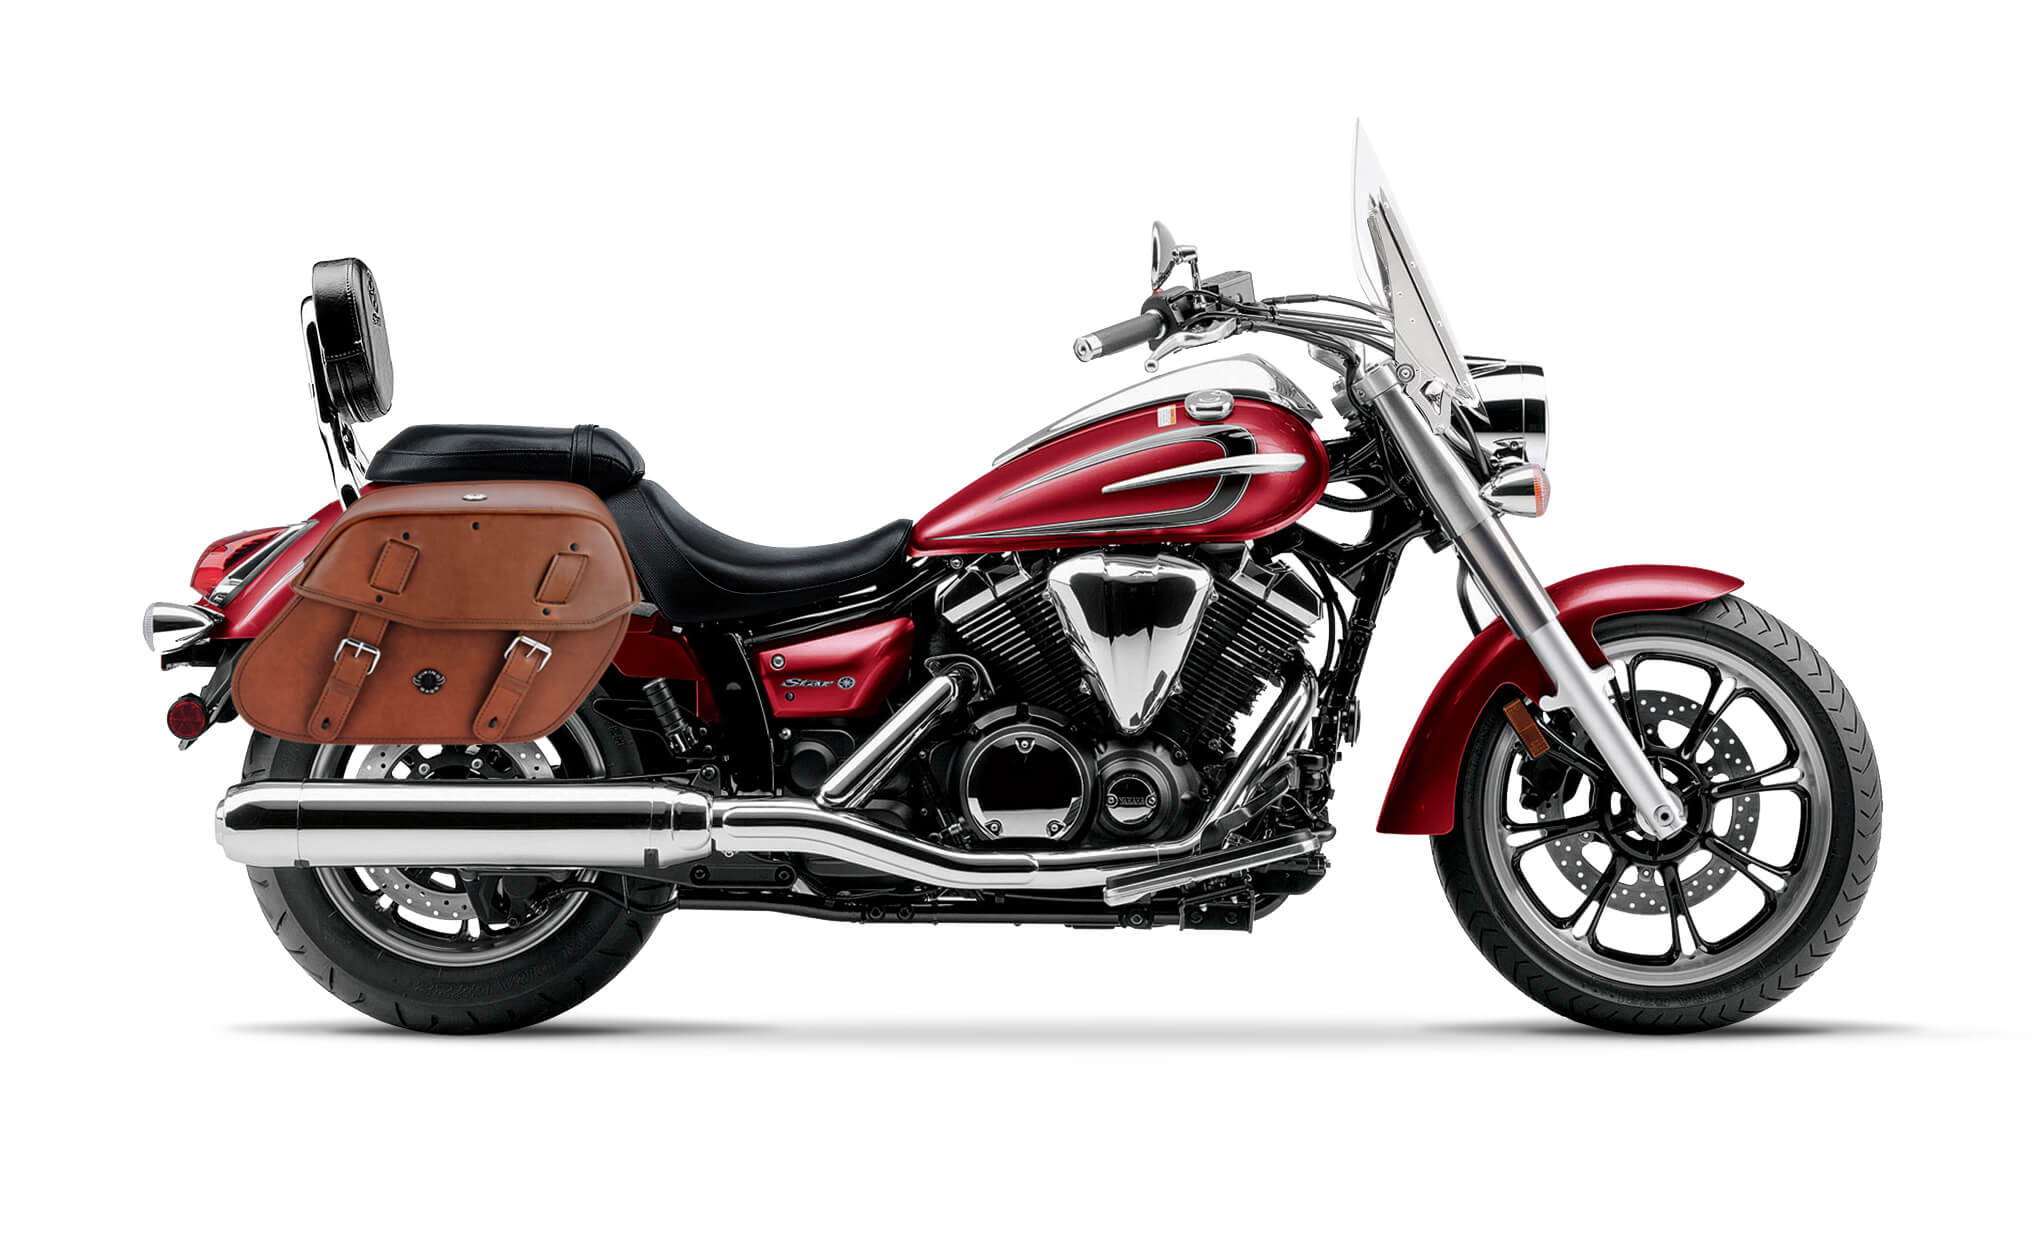 Viking Warrior Brown Large Yamaha V Star 950 Tourer Leather Motorcycle Saddlebags on Bike Photo @expand